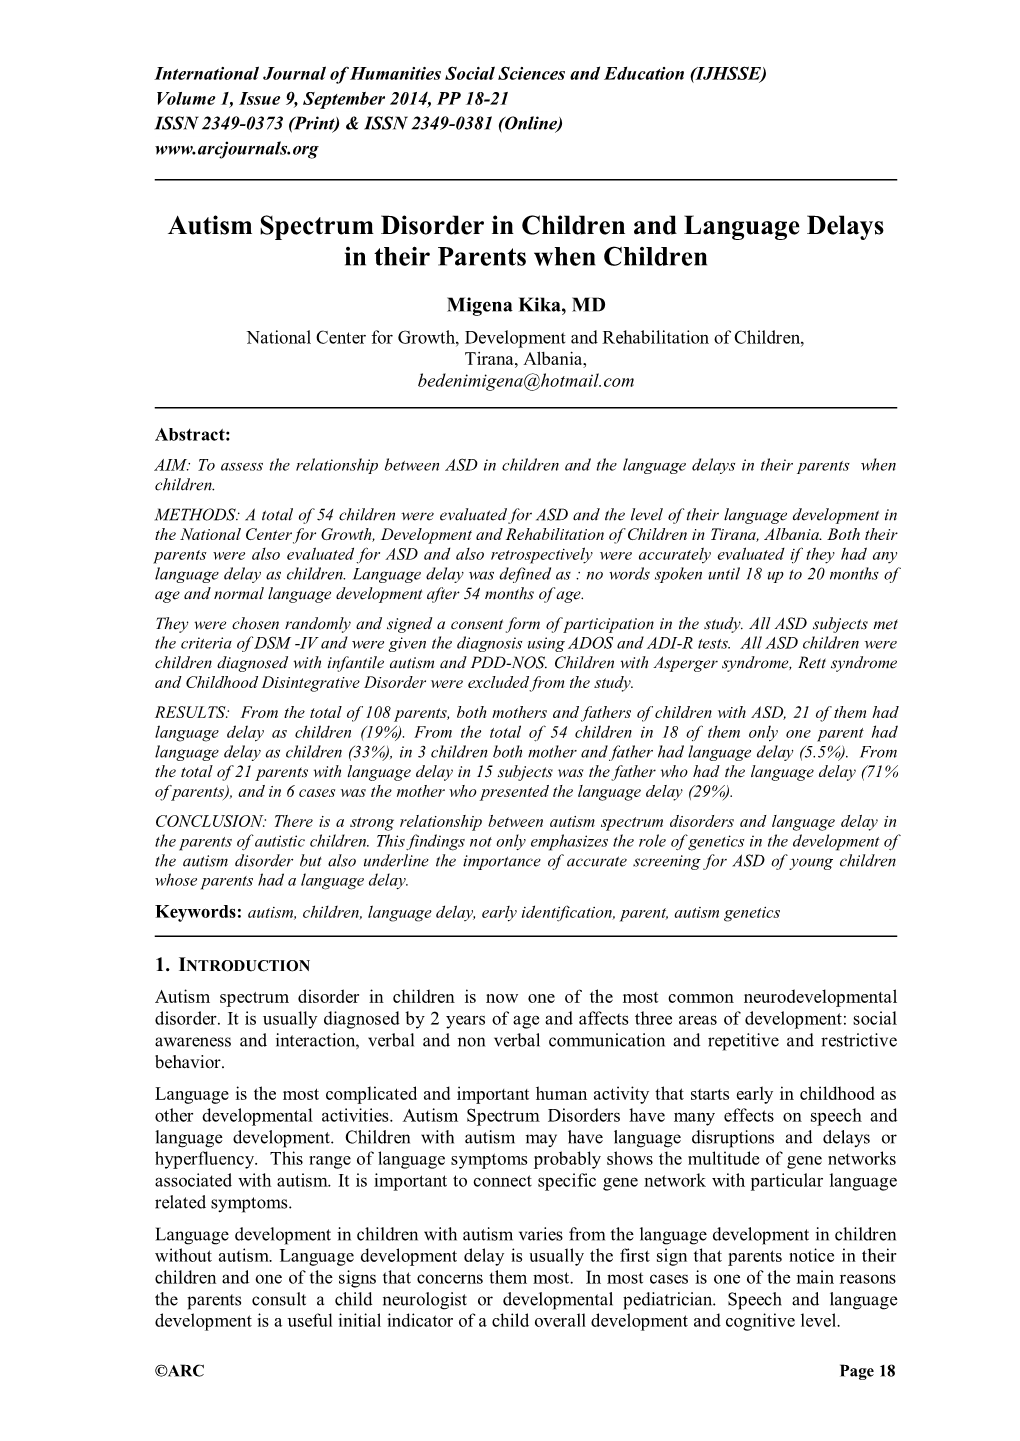 Autism Spectrum Disorder in Children and Language Delays in Their Parents When Children